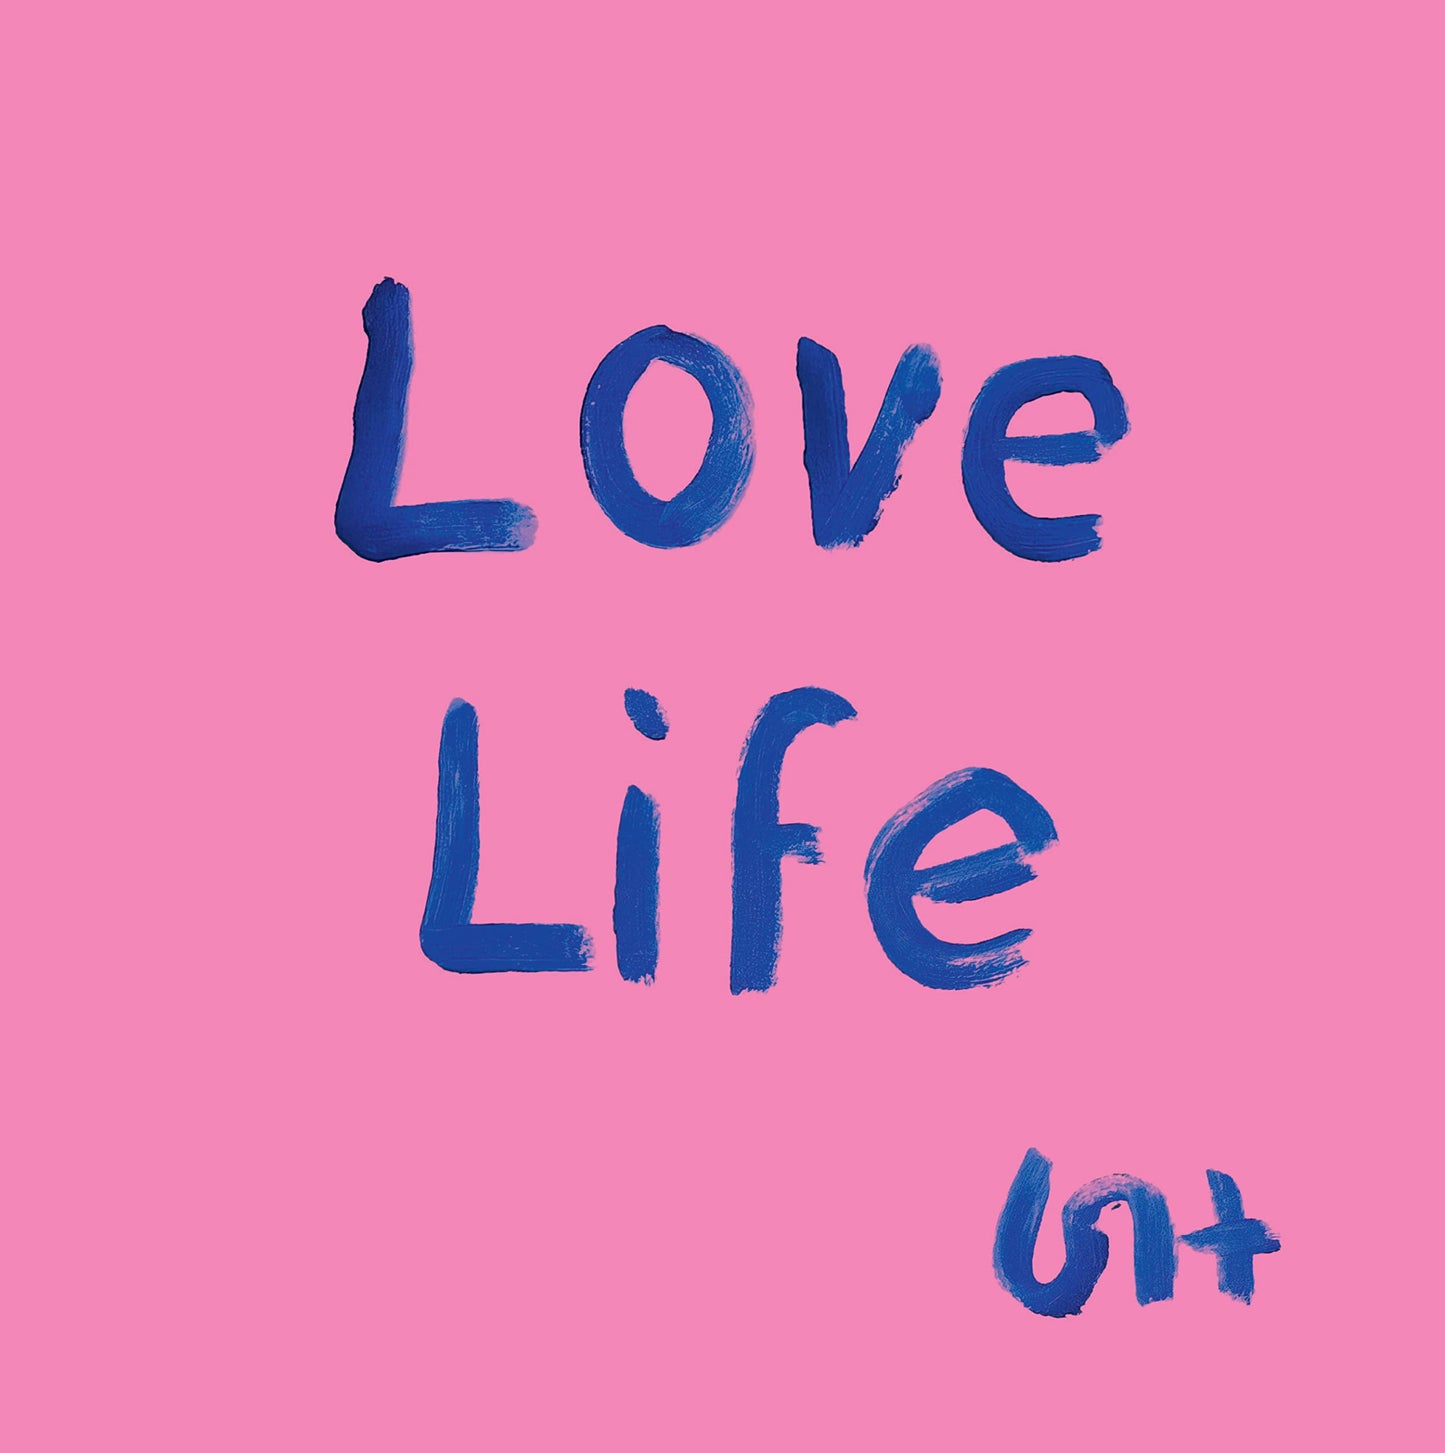 Love Life - David Hockney